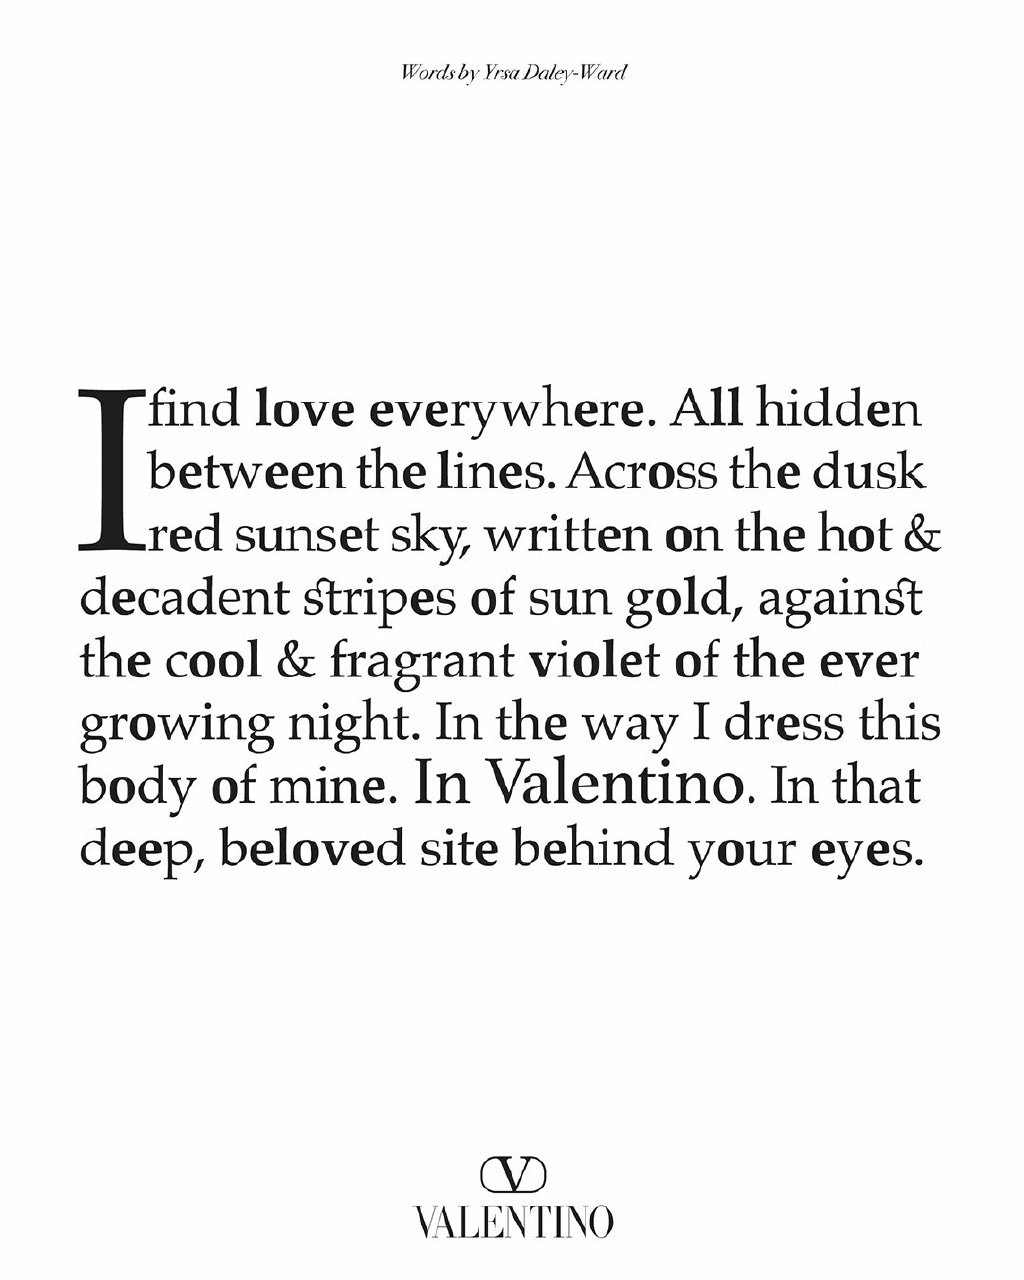 时装界的第一个纯文字诗词广告——Valentino